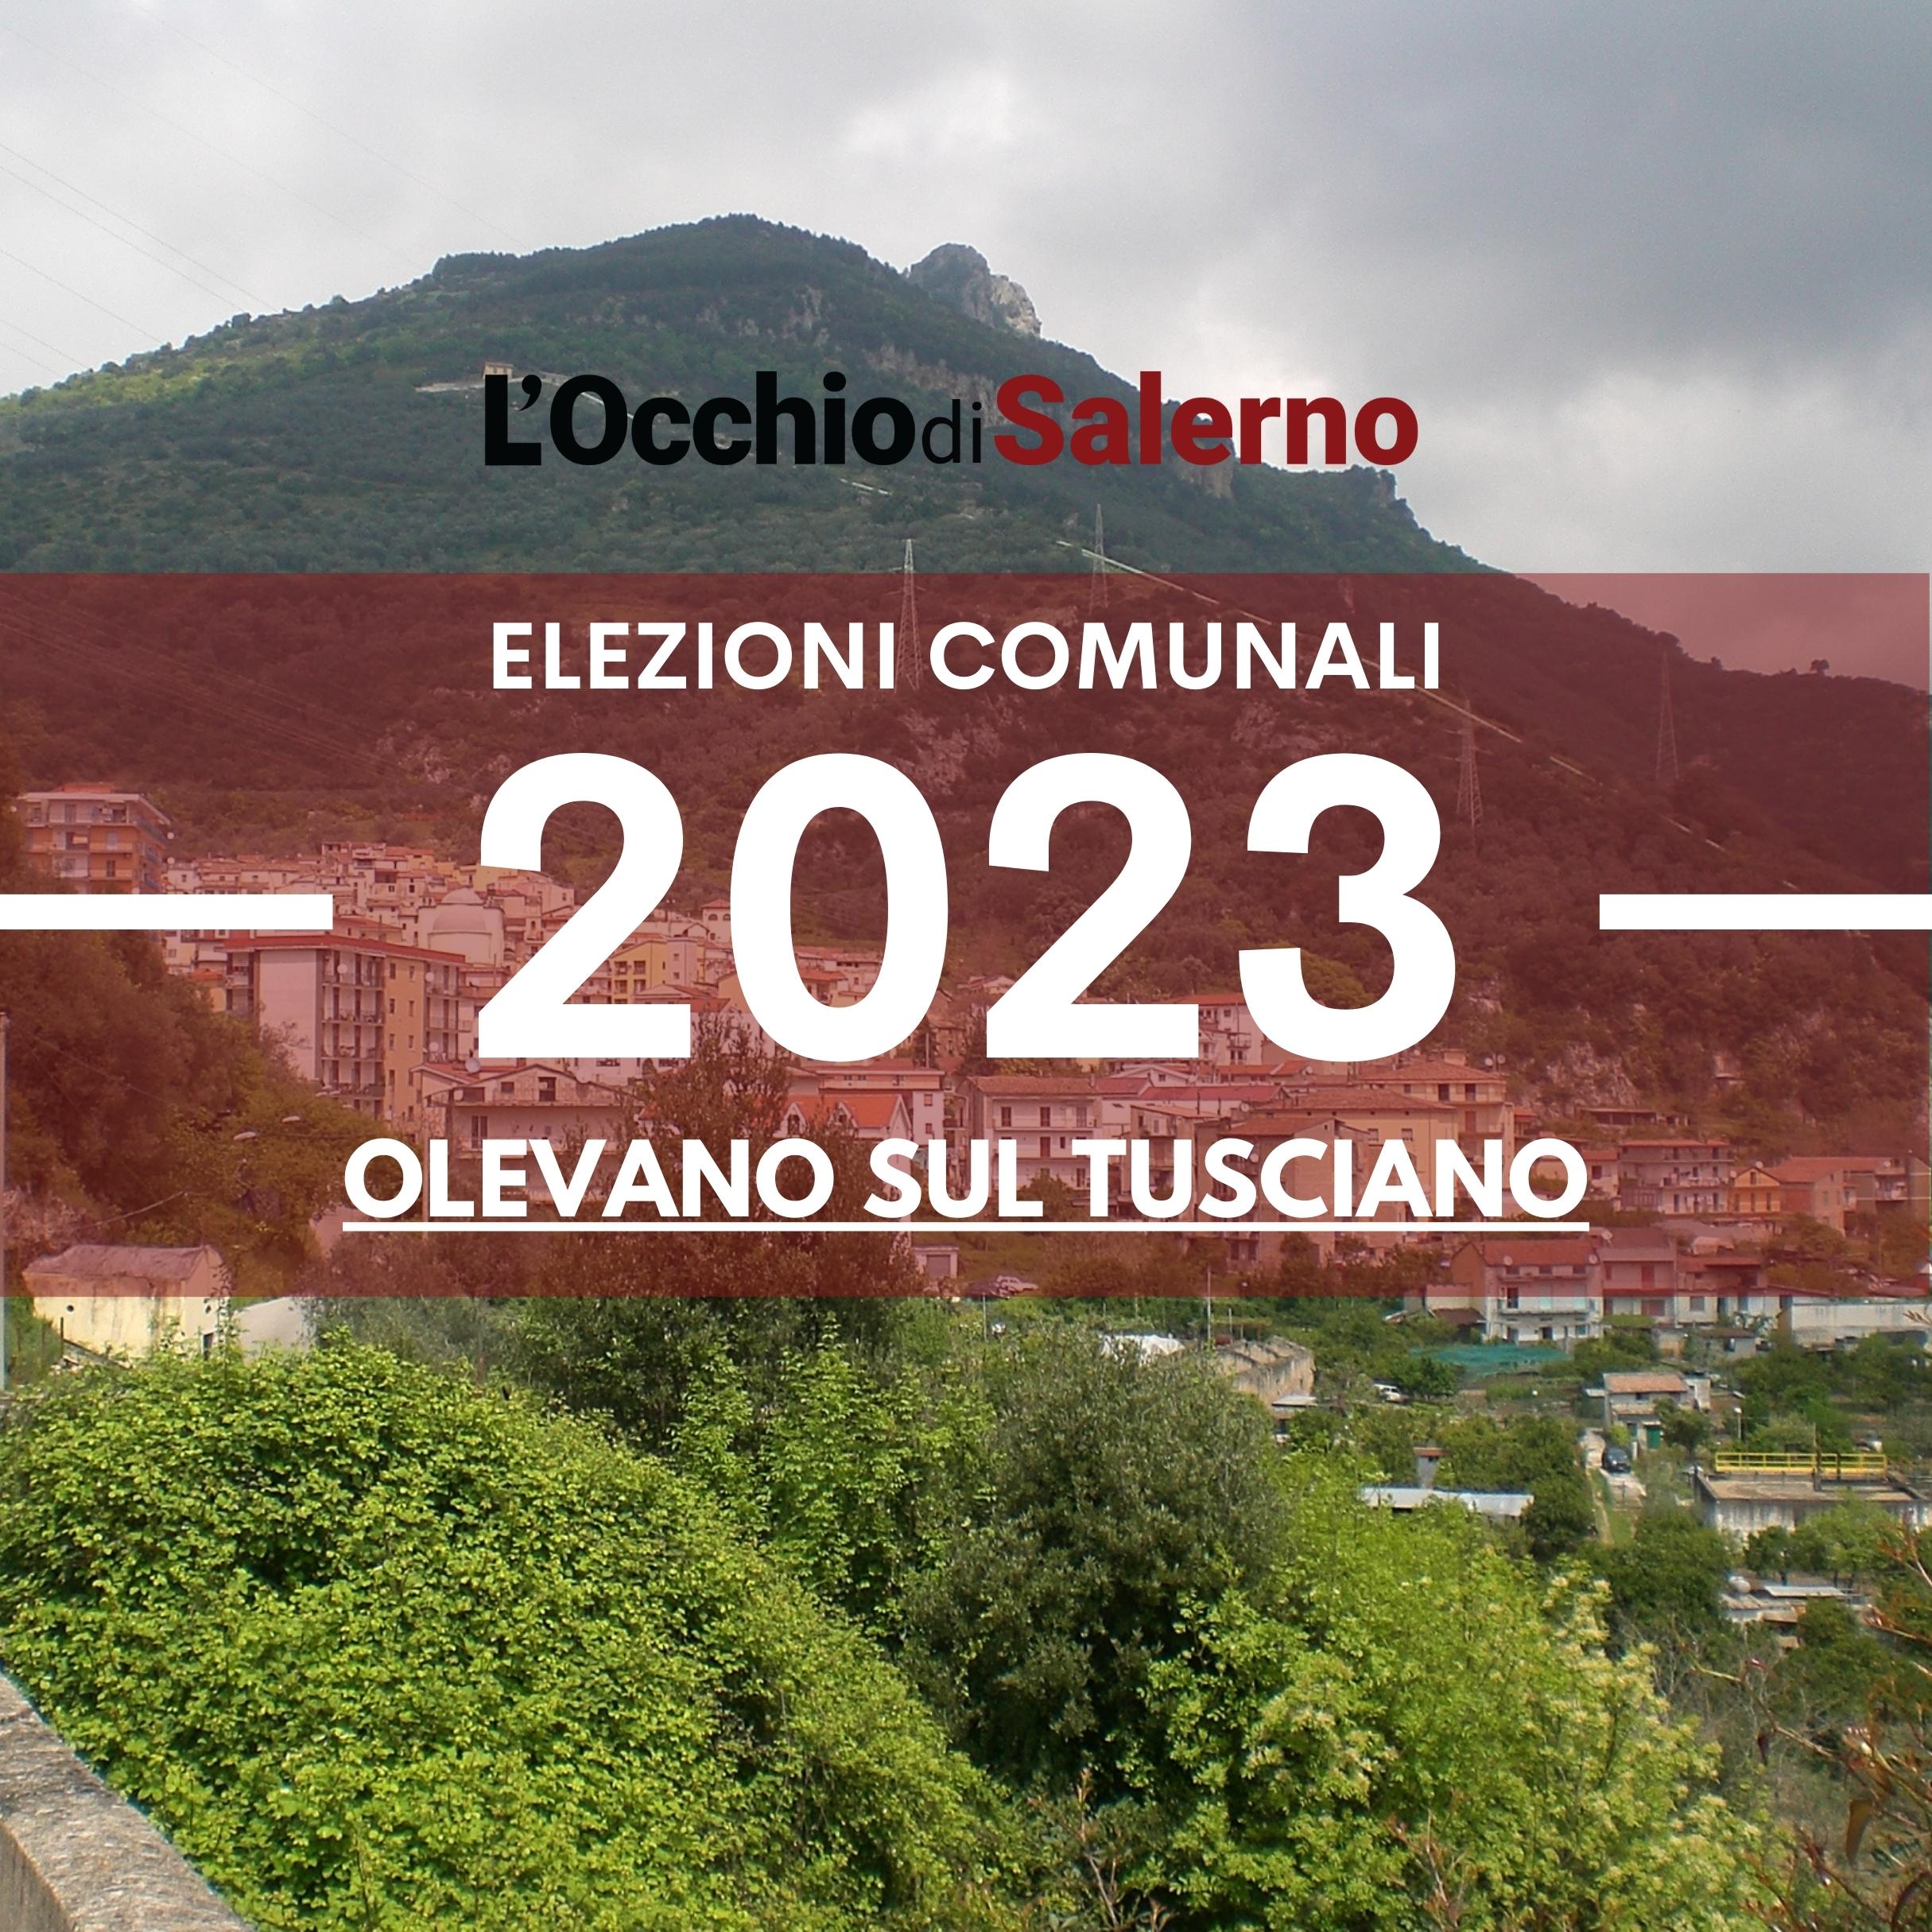 Elezioni comunali 2023 Olevano sul Tusciano liste candidati